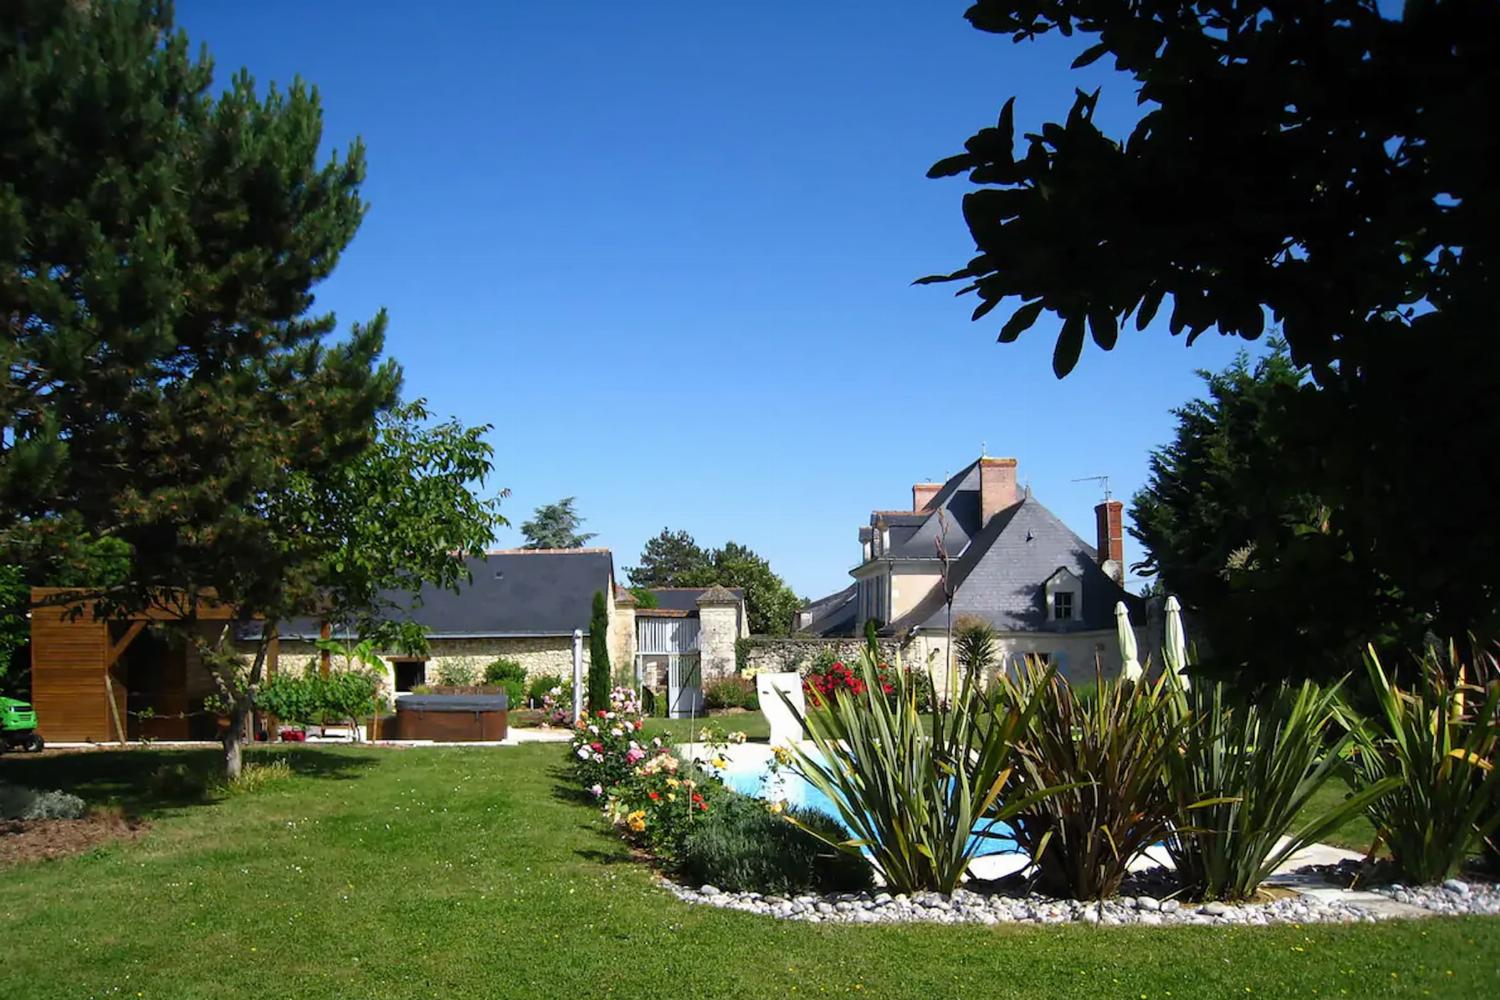 Location maison dans la Loire